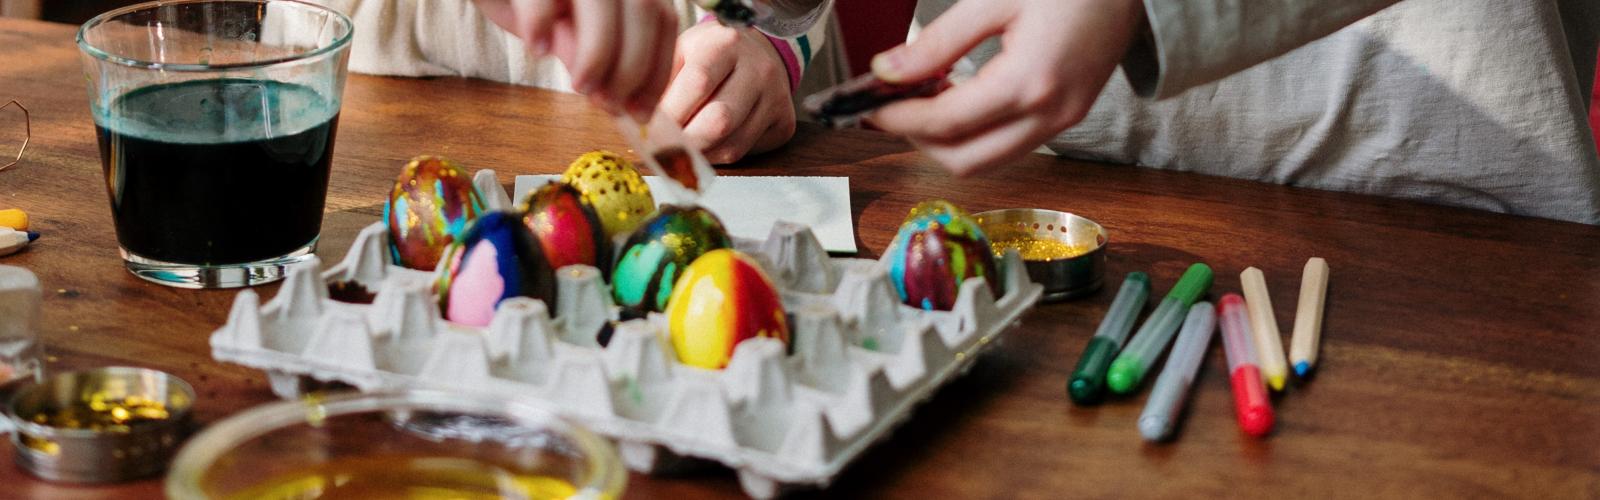 I Aalbor har familiearbejdet blandt andet pustet og malet æg med både børn og unge i anledning af påsken.